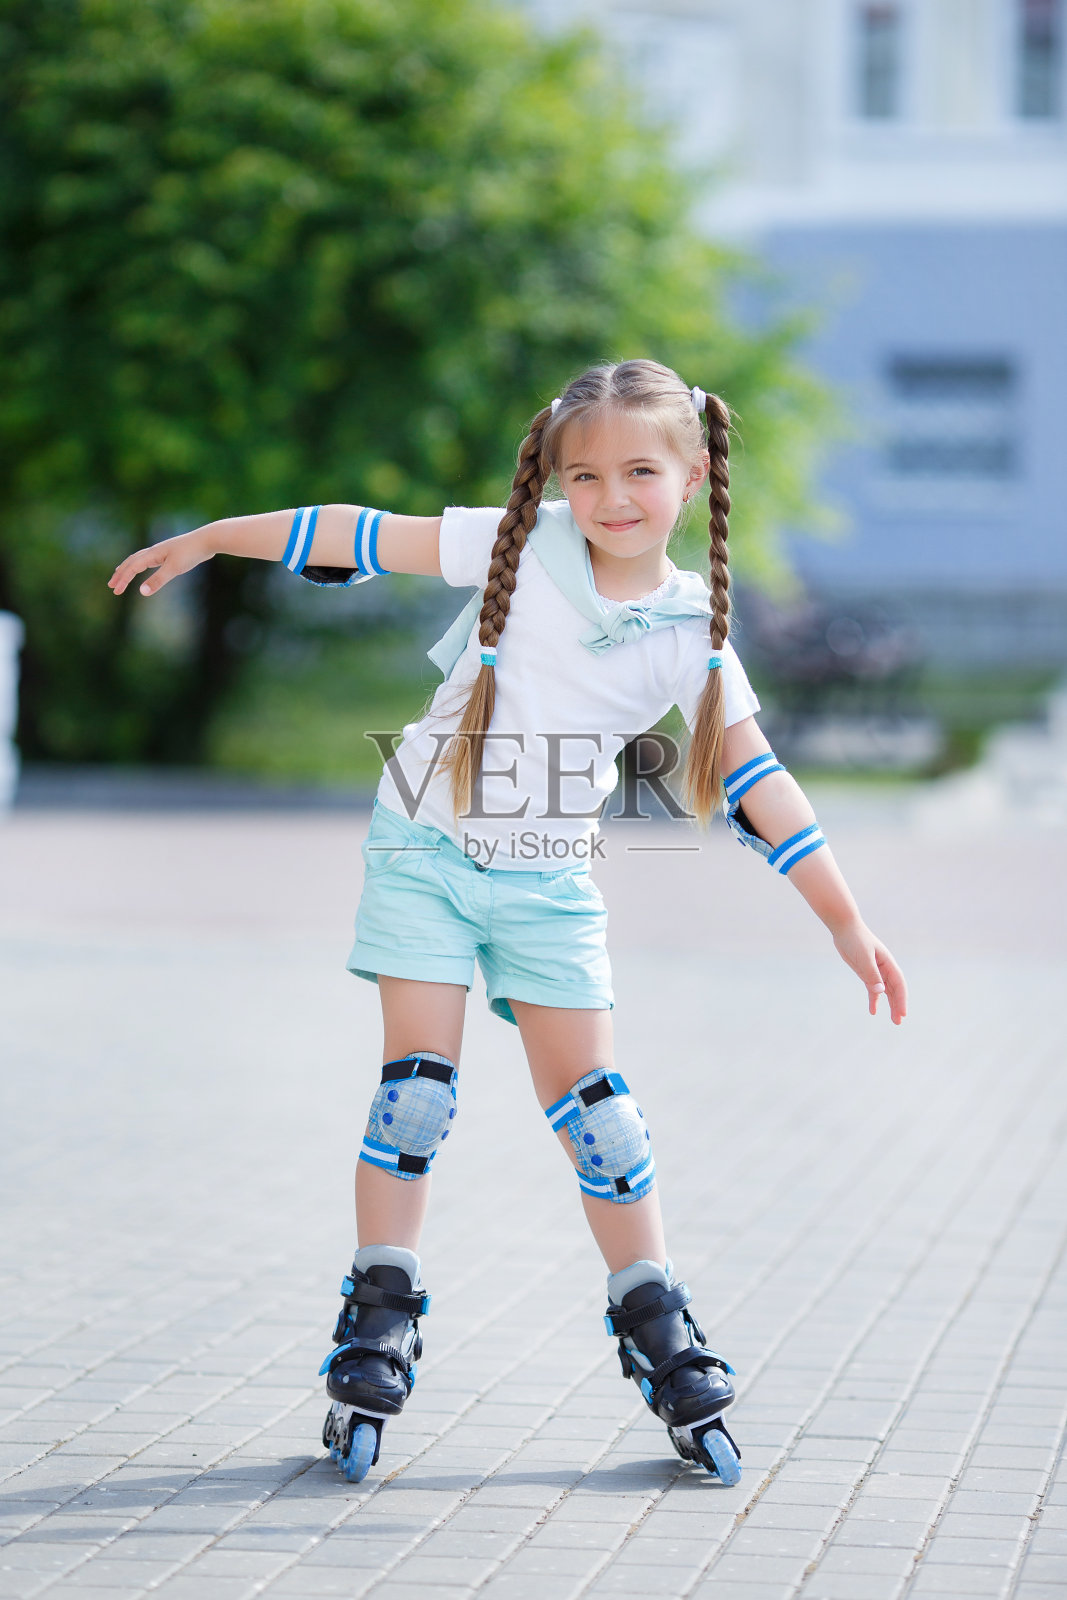 儿童溜冰鞋_儿童溜冰鞋 单排轮滑鞋 3-10岁礼品 轮滑鞋儿童 旱冰鞋 - 阿里巴巴